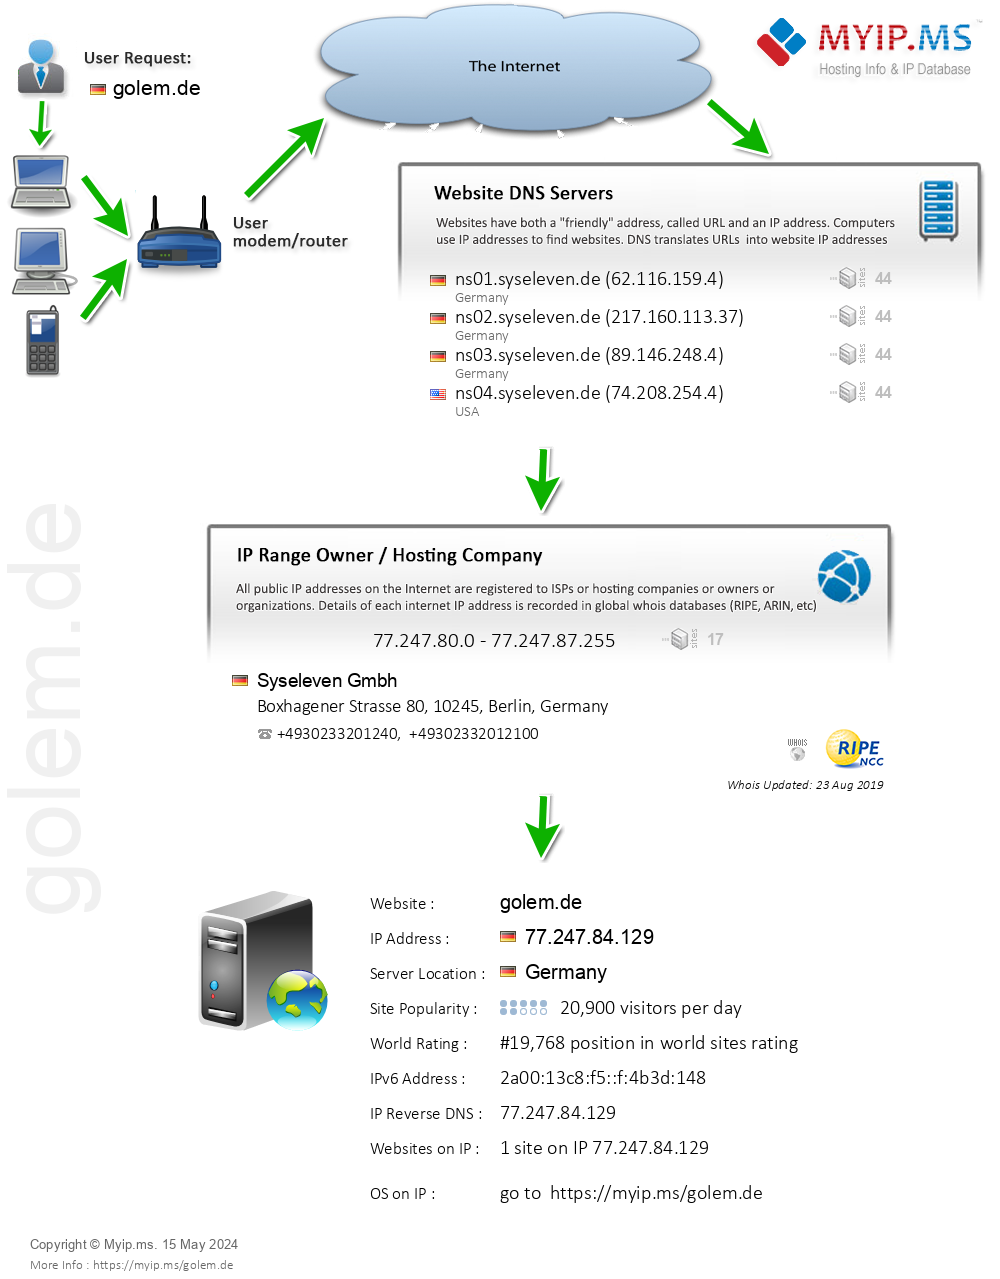 Golem.de - Website Hosting Visual IP Diagram